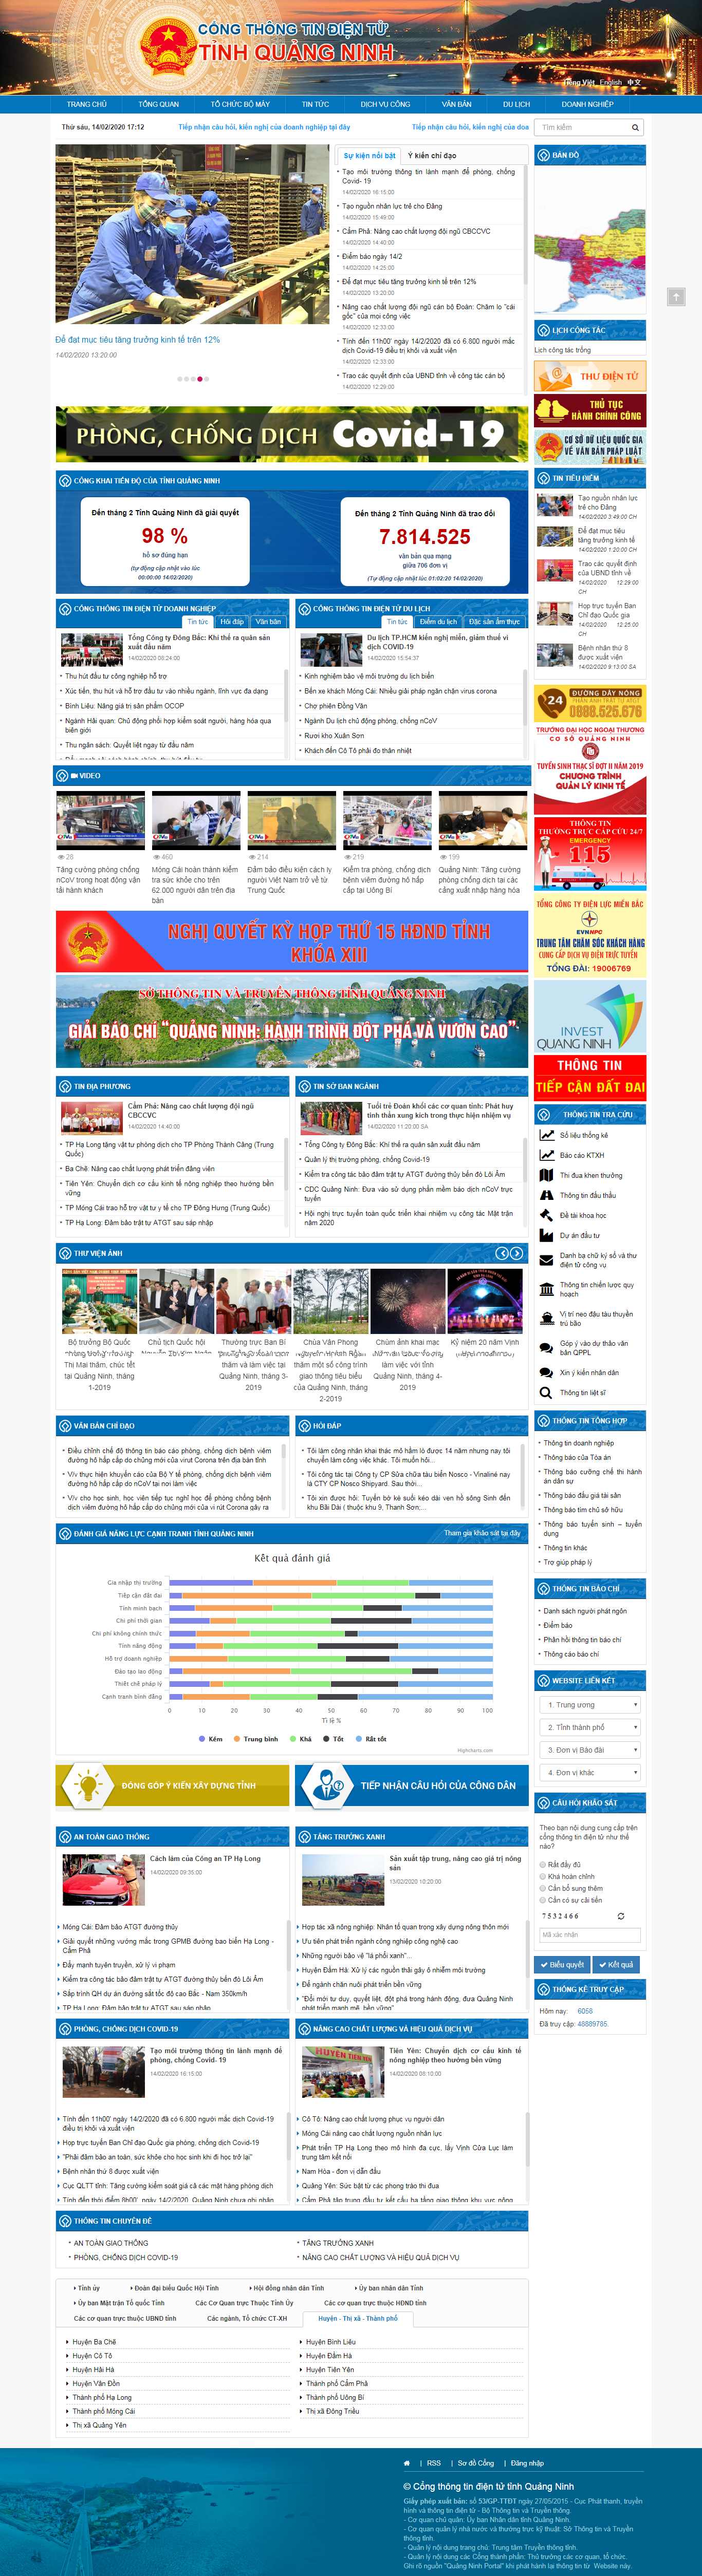 Thiết kế Website cổng thông tin - www.quangninh.gov.vn